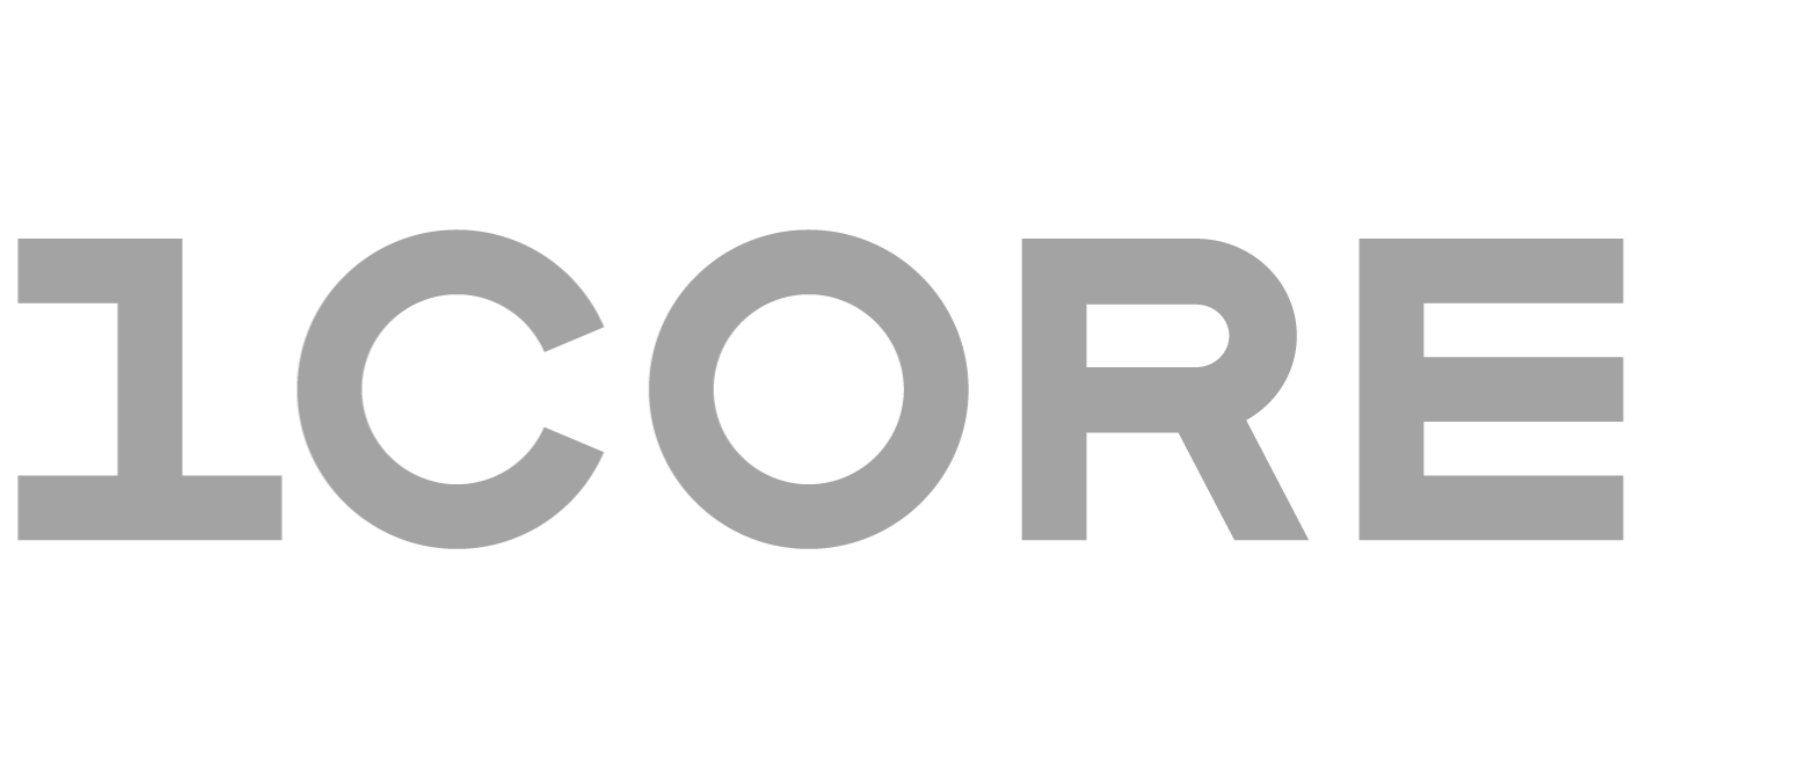 Szare logo firmy 1Core.